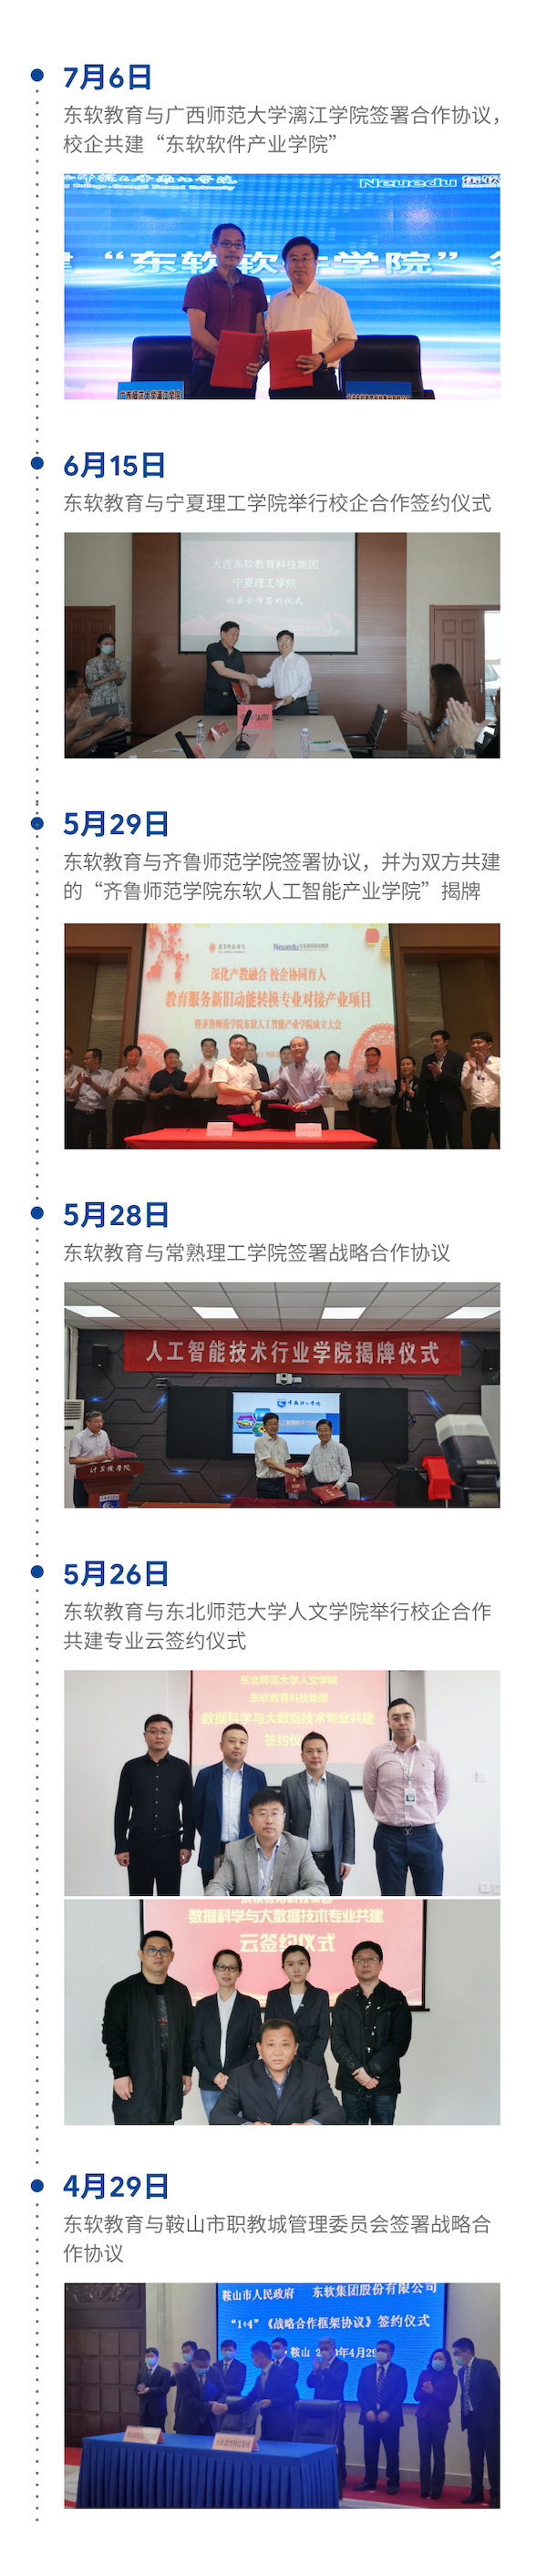 东软教育作为中国领先IT增值教育服务提供商的新开局